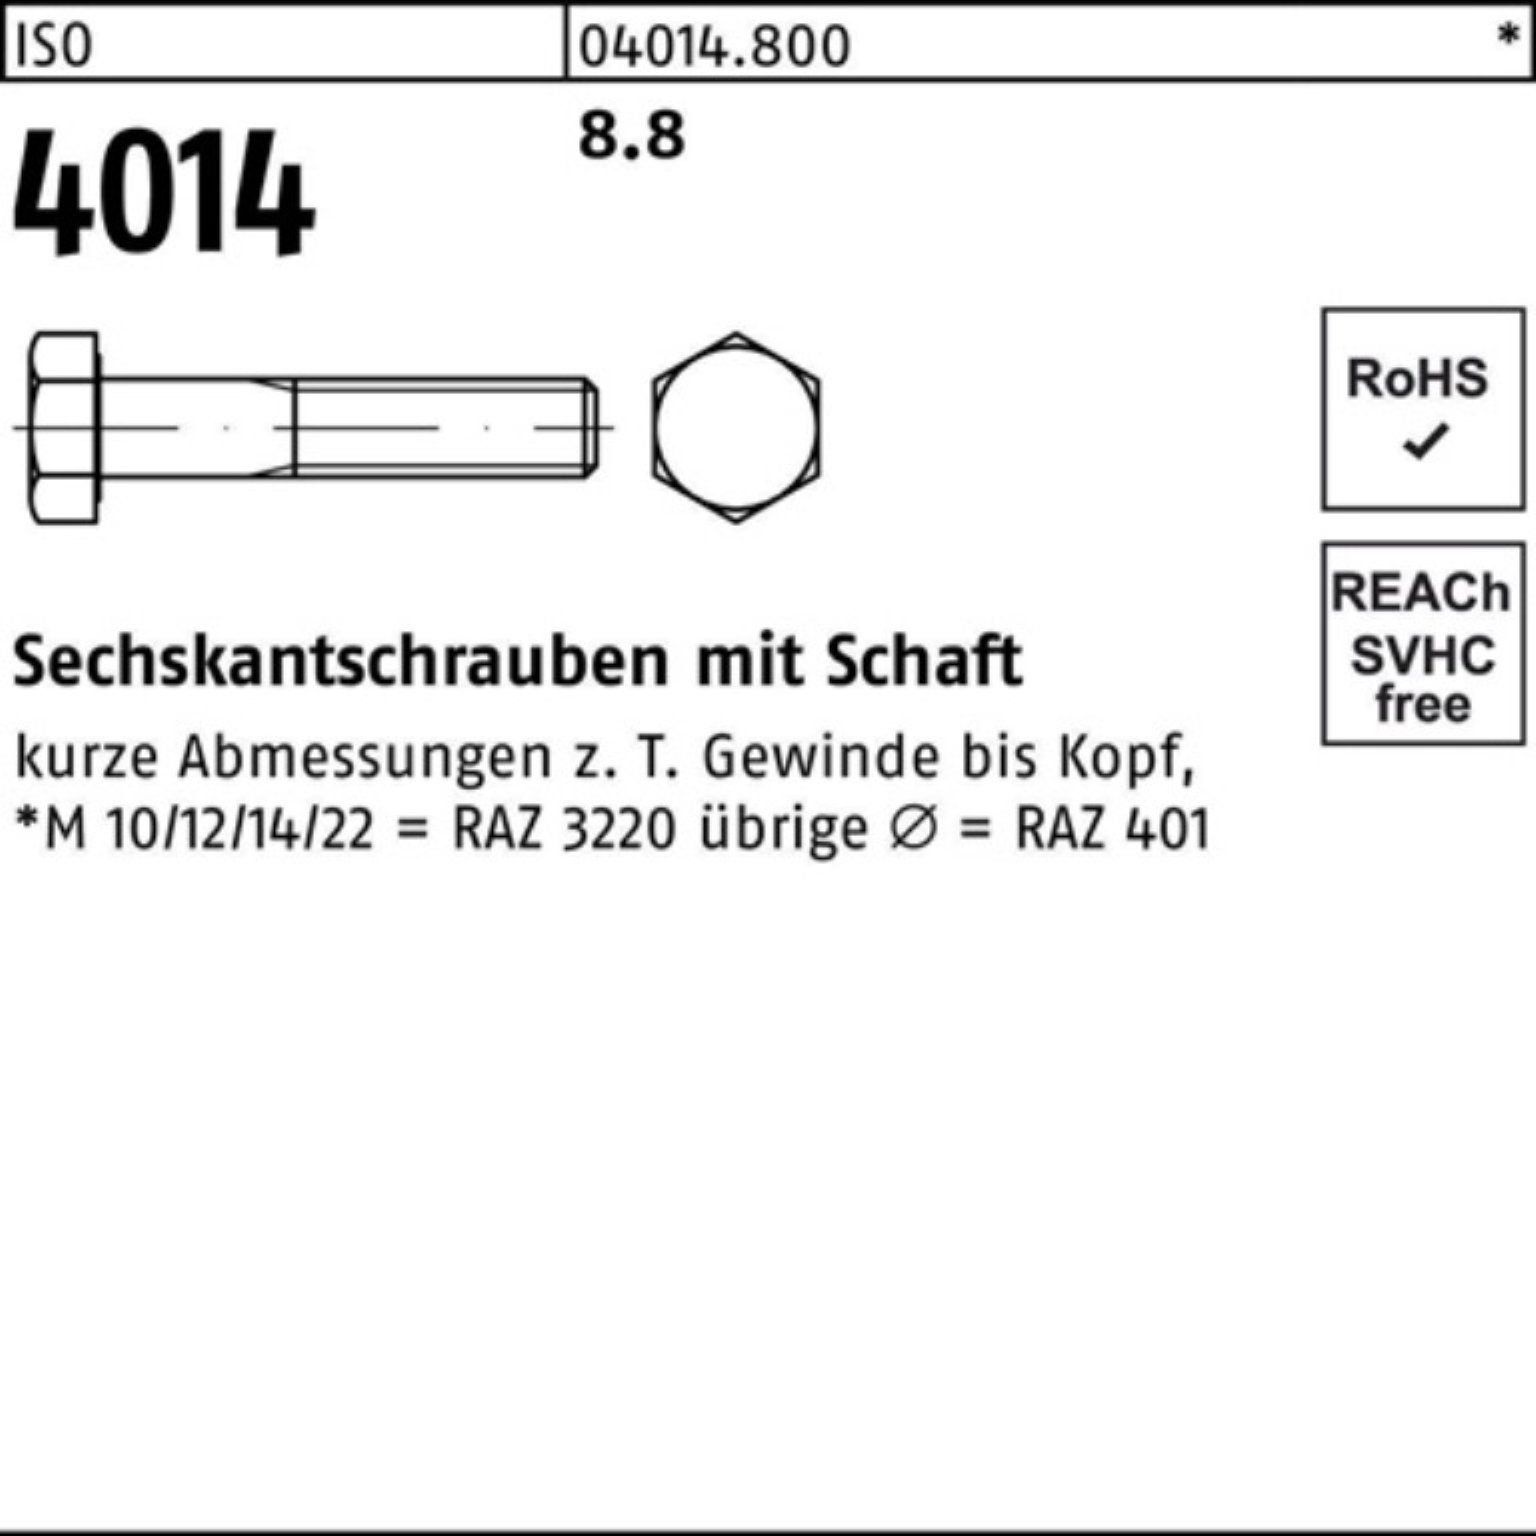 Bufab Sechskantschraube 100er IS Stück 270 Schaft 8.8 50 ISO Pack M10x 4014 Sechskantschraube